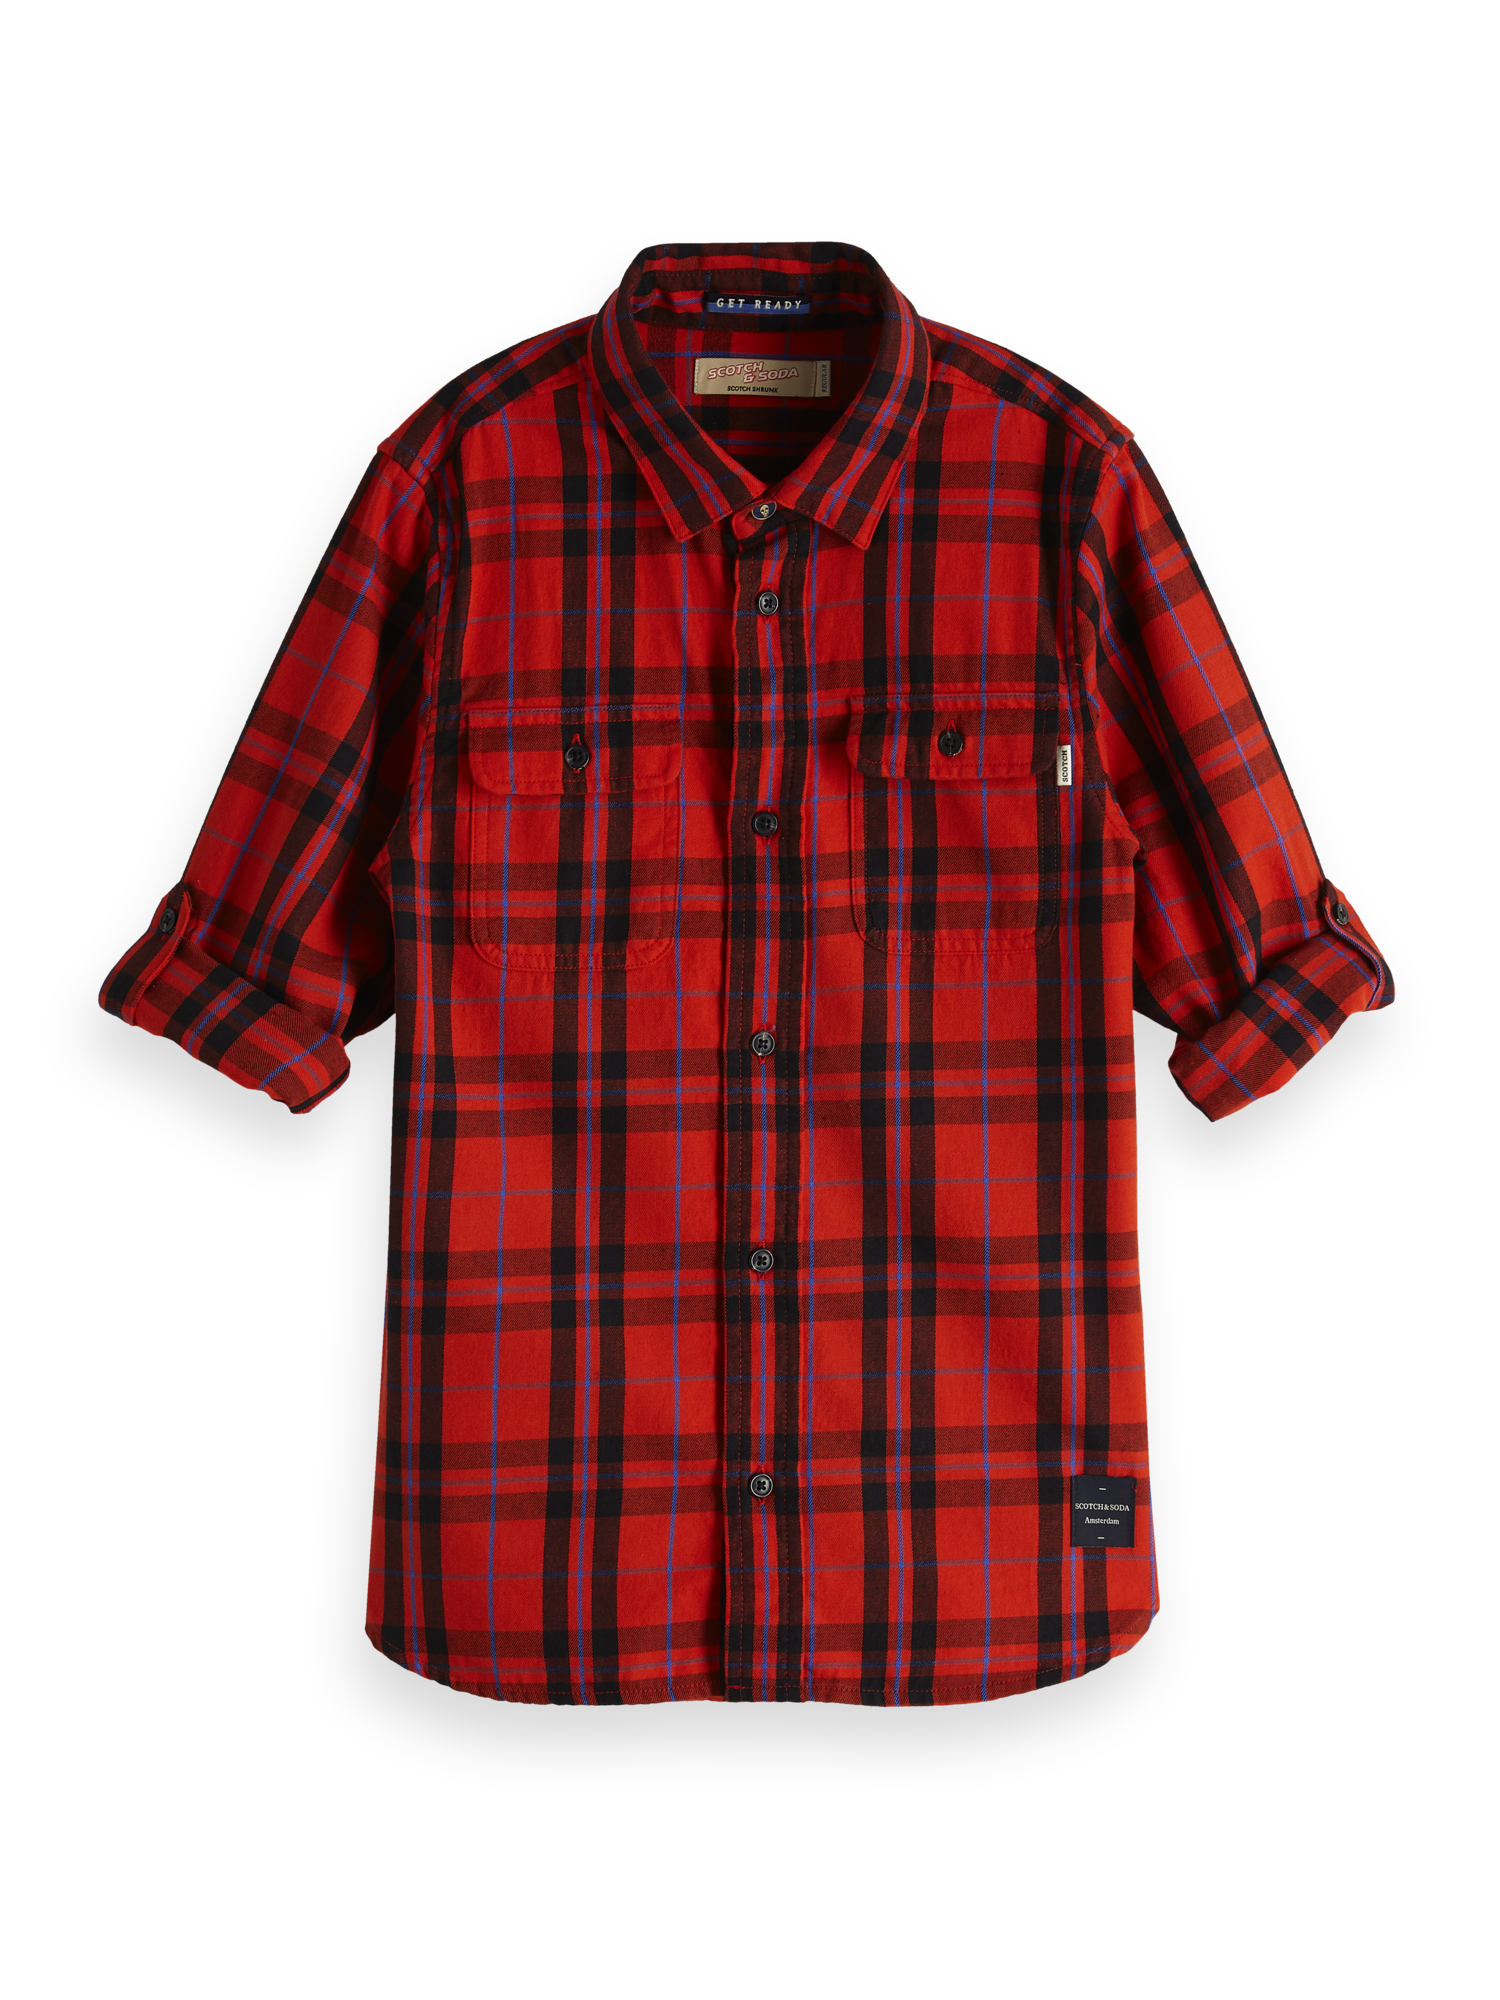 Scotch & Soda Plaid Shirt - Red